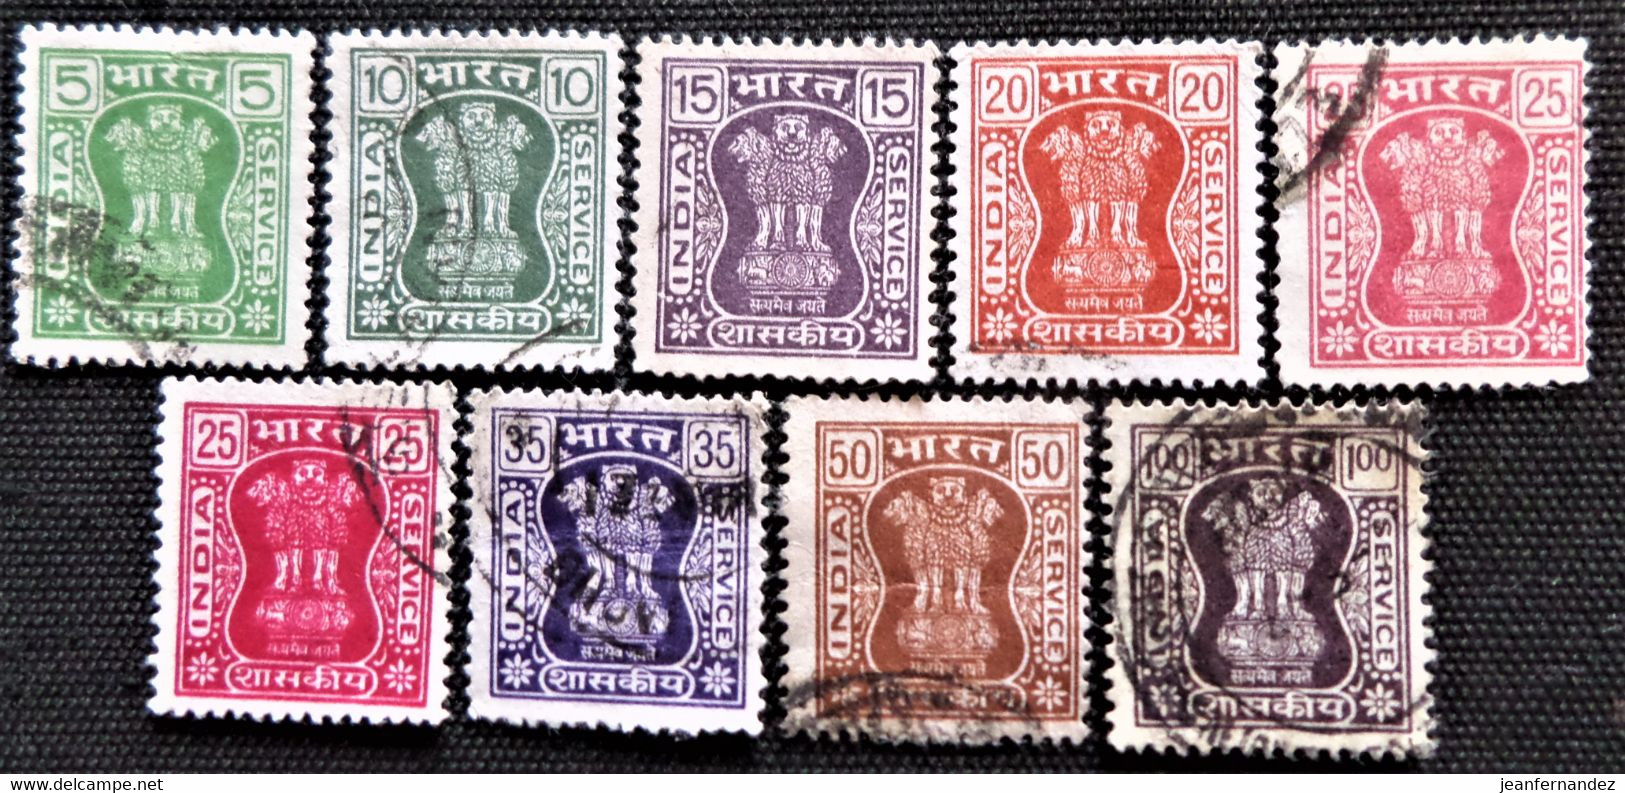 Timbres De Service De L'Inde 1976 -1980 Capital Of Asoka Pillar  Stampworld N°  192 à 196A_198 à 200 - Francobolli Di Servizio